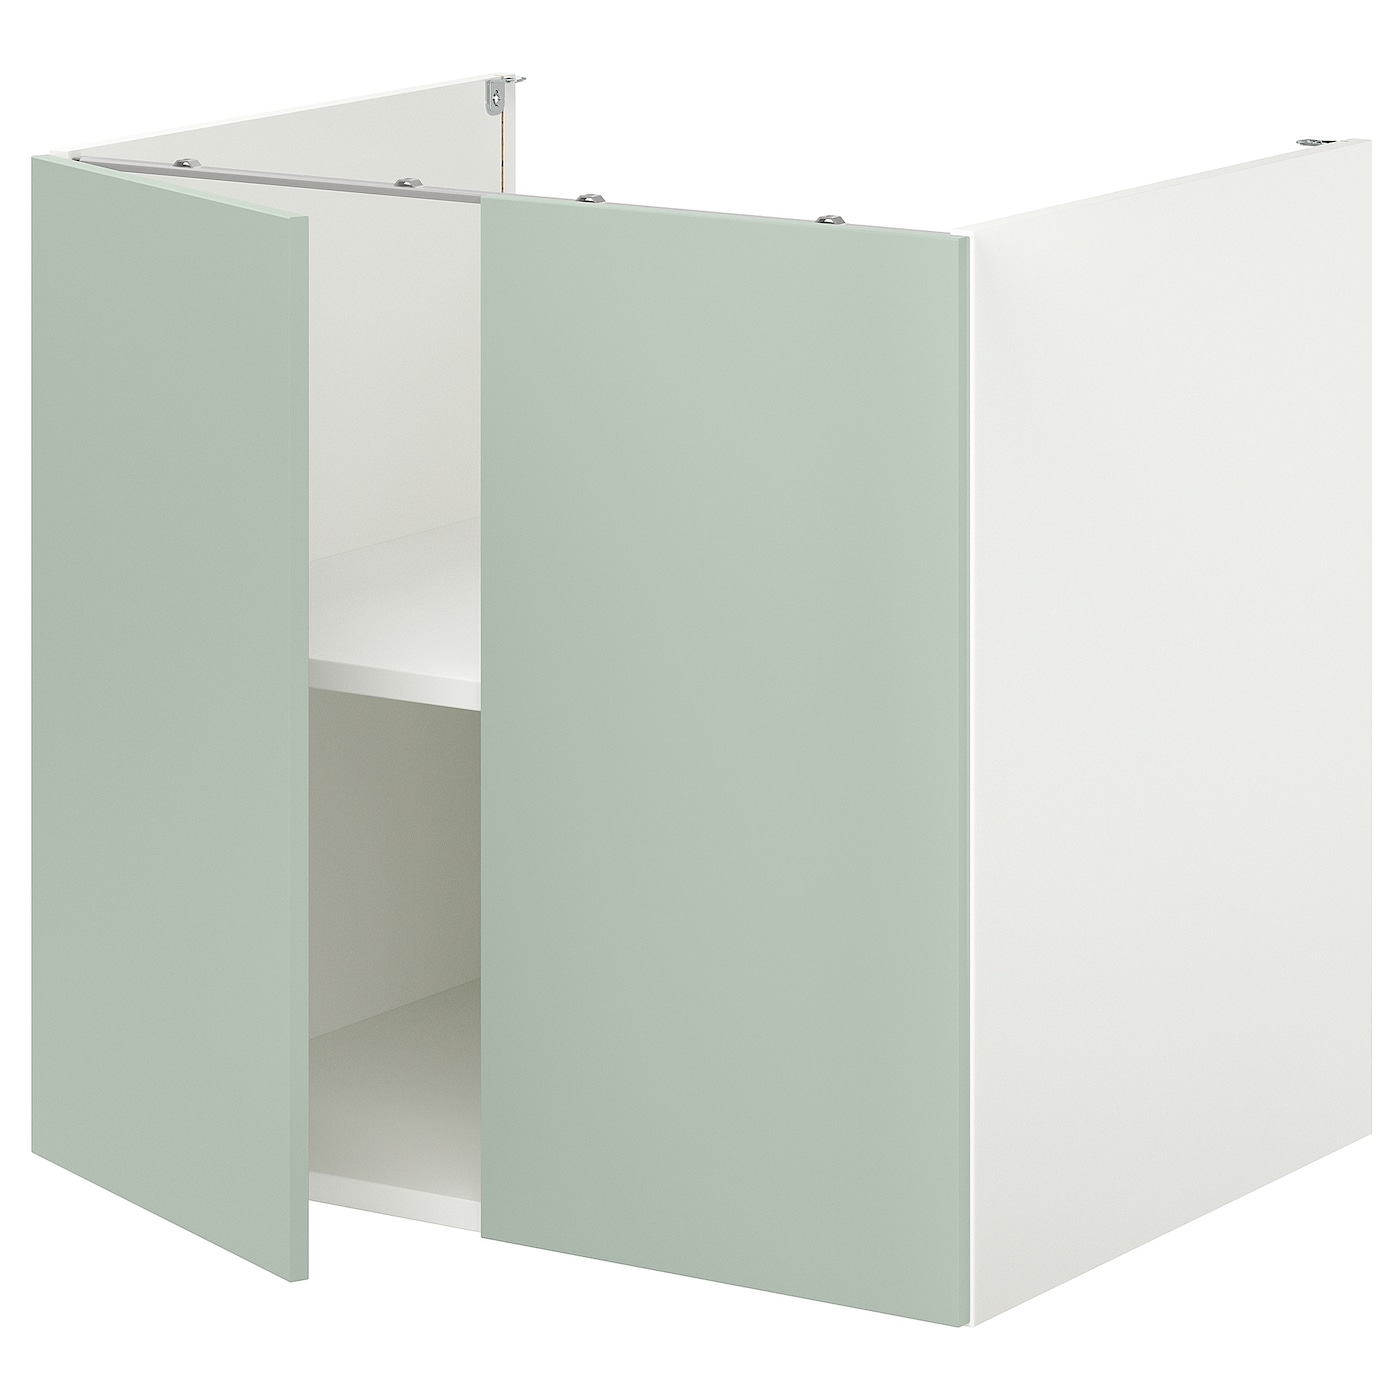 Напольный шкаф с полкой - IKEA ENHET, 75x62x80см, белый/светло-серый, ЭХНЕТ ИКЕА